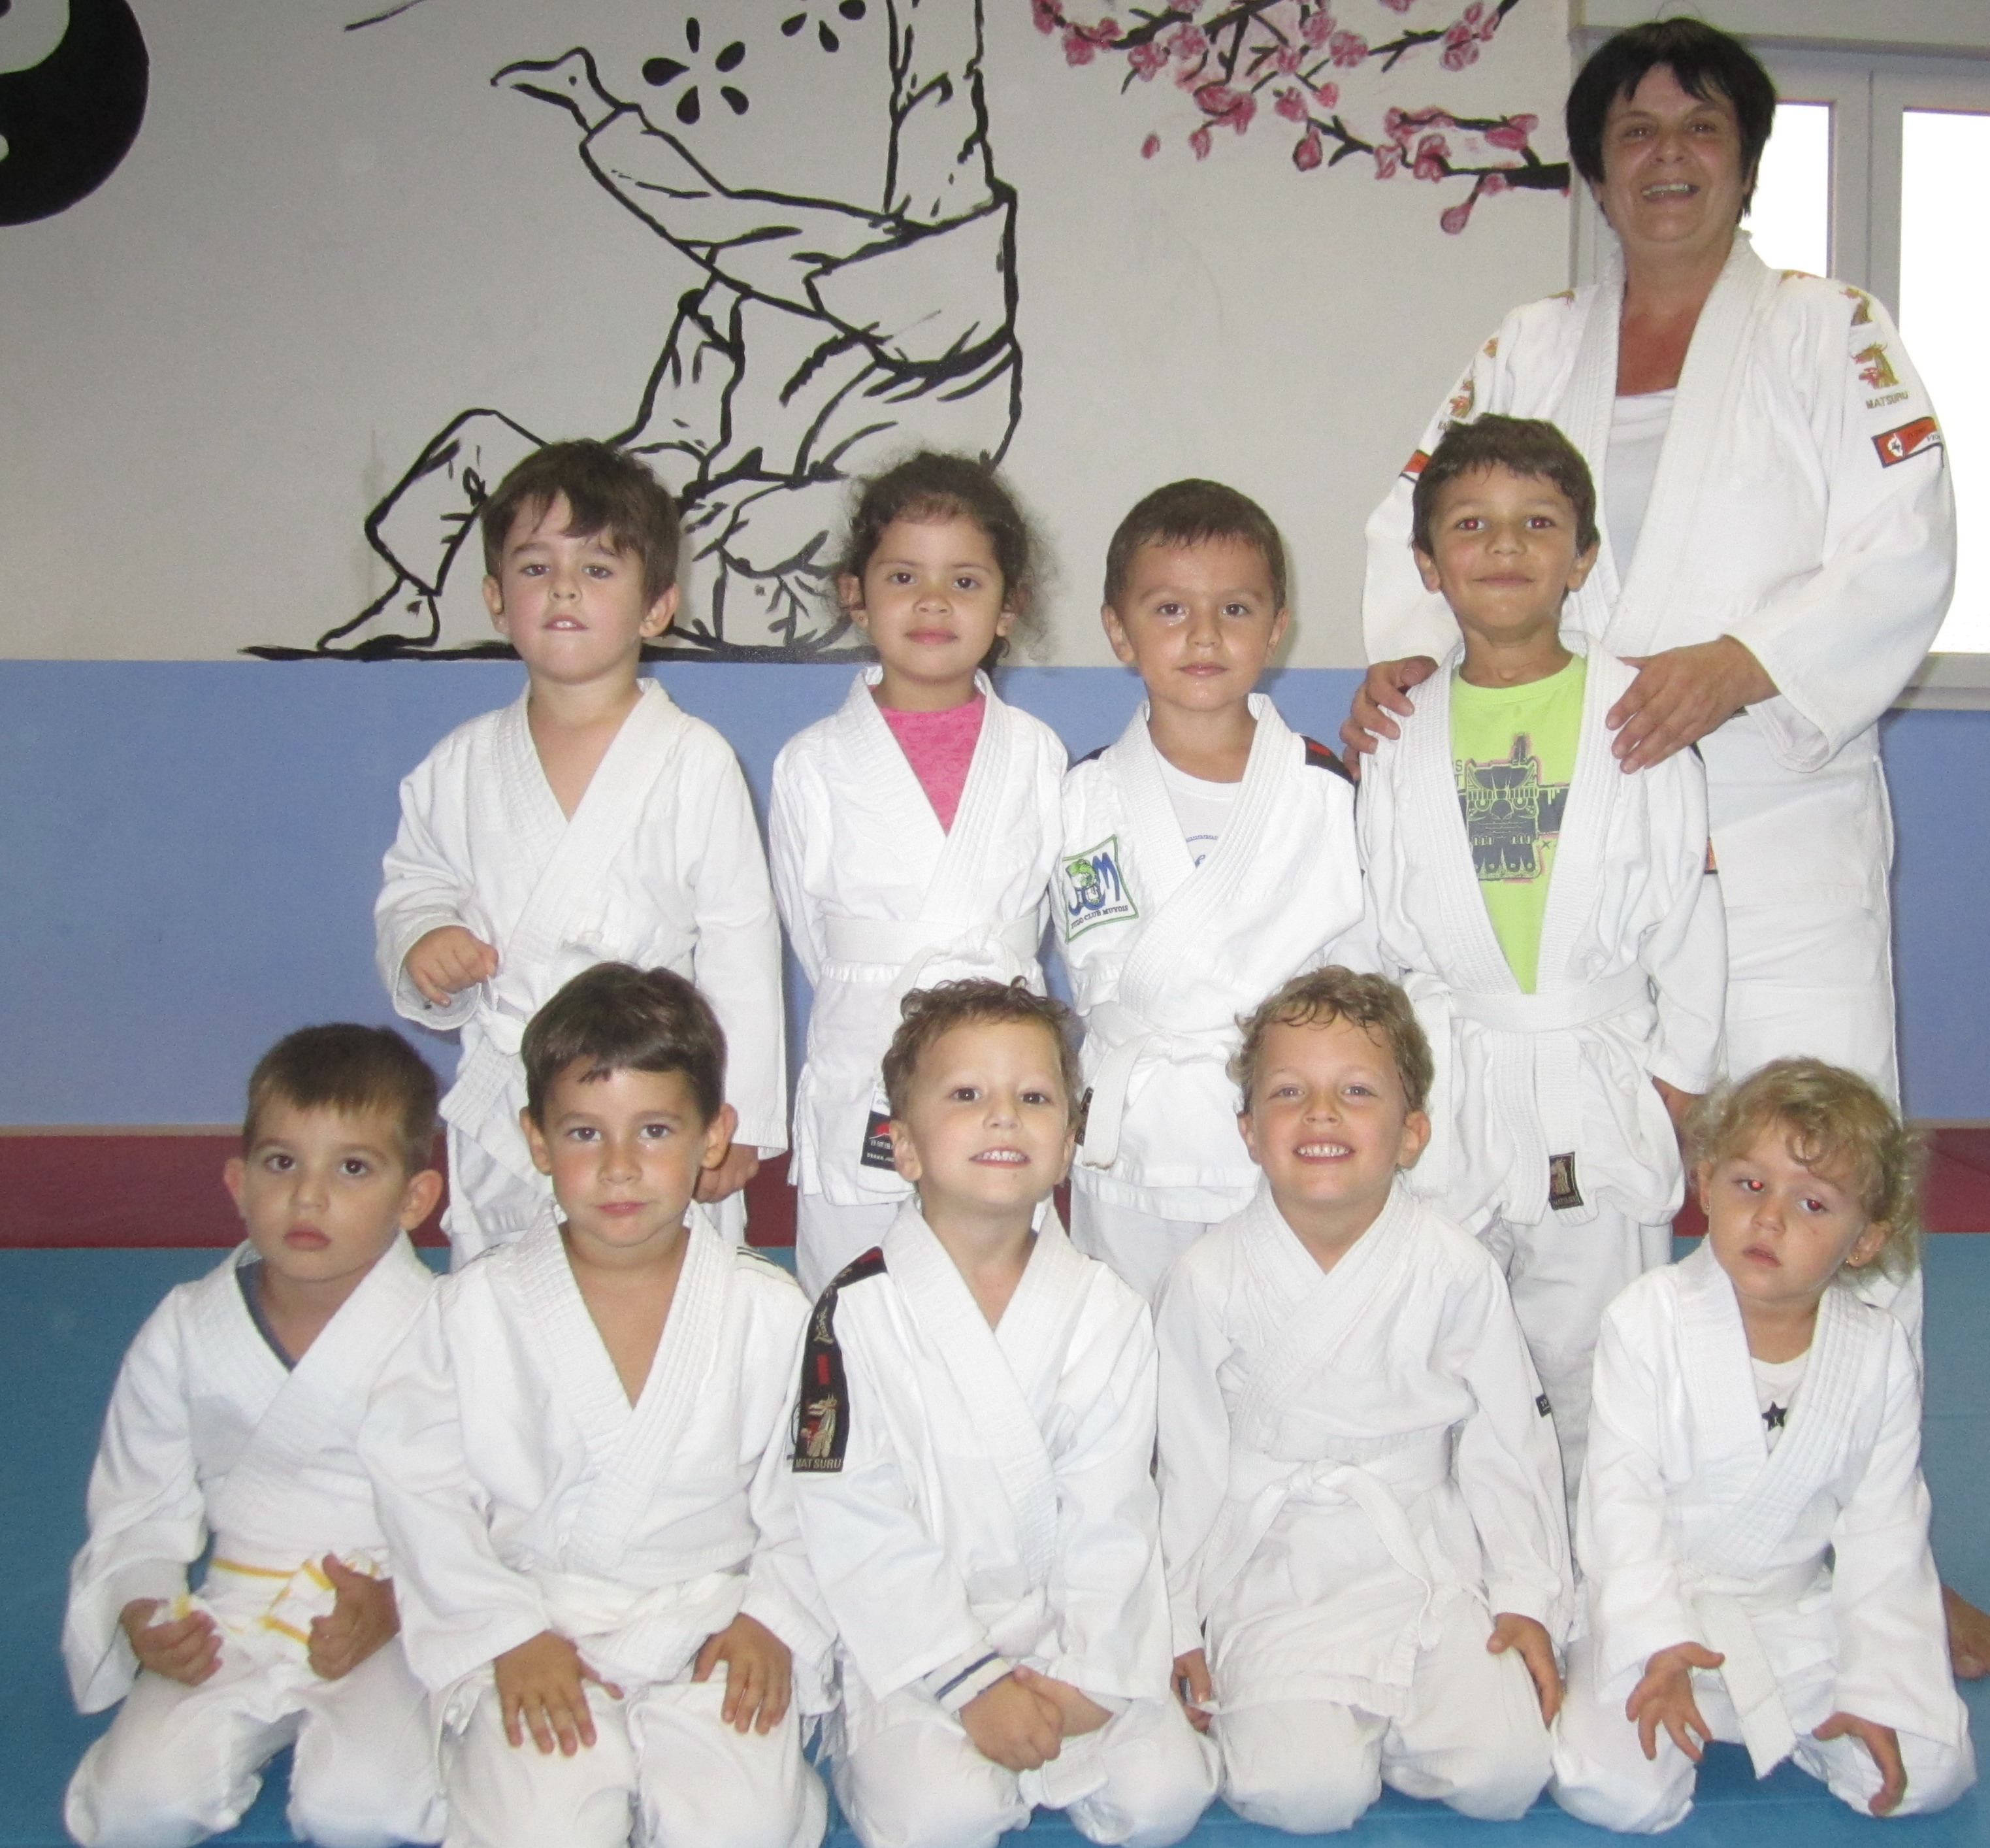 Au Judo club de Travu, la reprise se calque sur les horaires scolaires